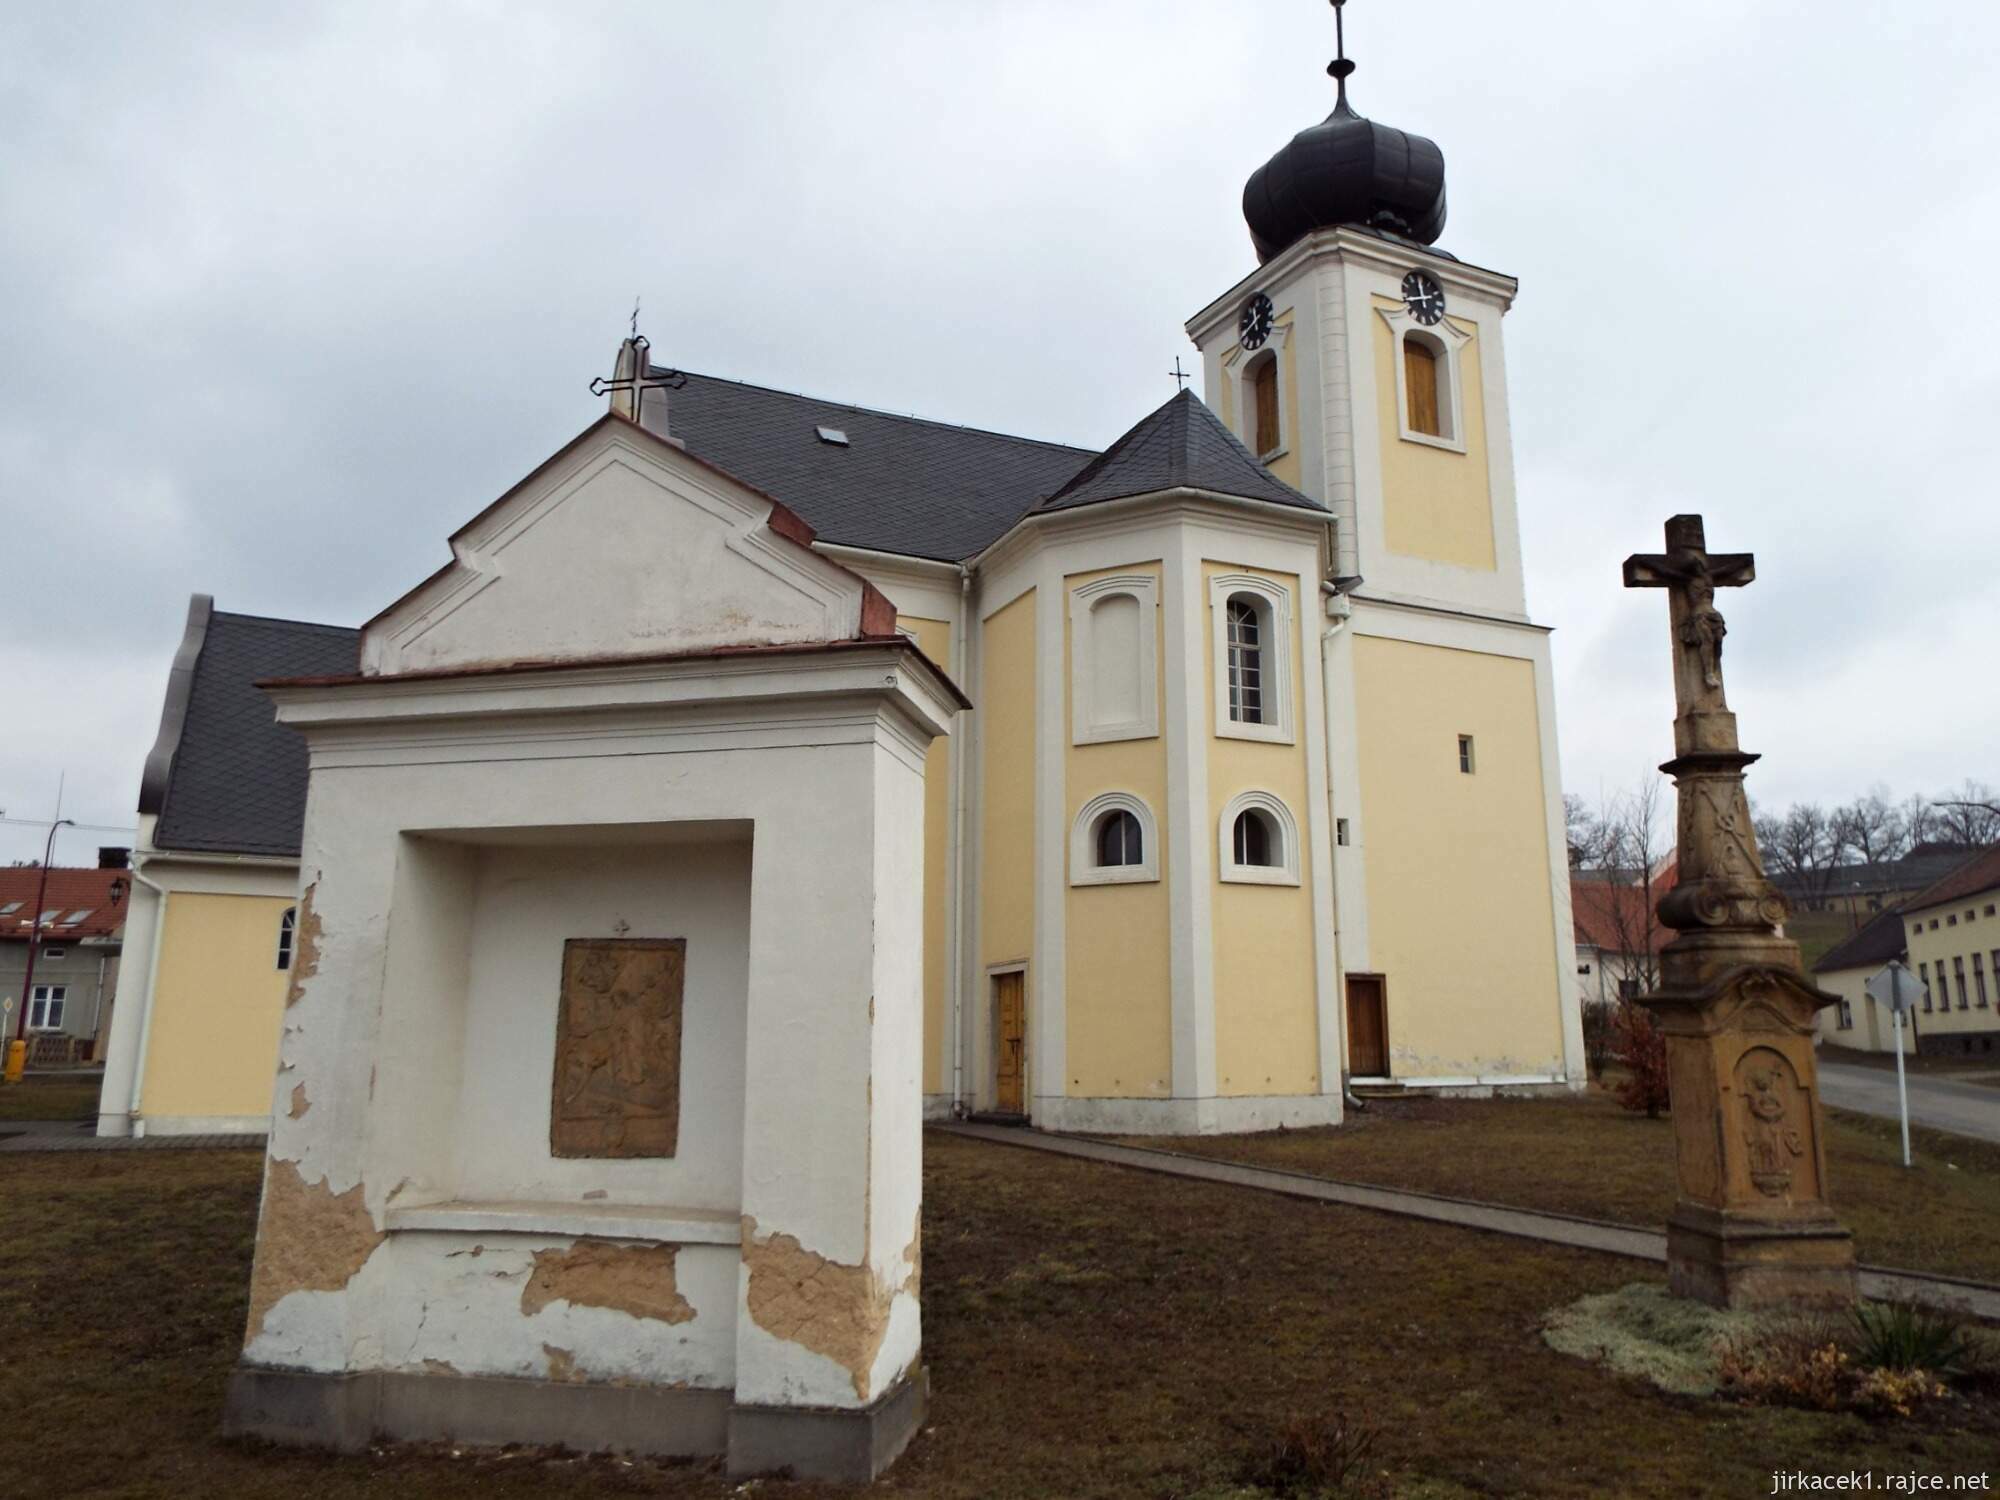 02 - Jaroměřice - Kostel Všech svatých 05 - začátek křížové cesty a kříž z roku 1819